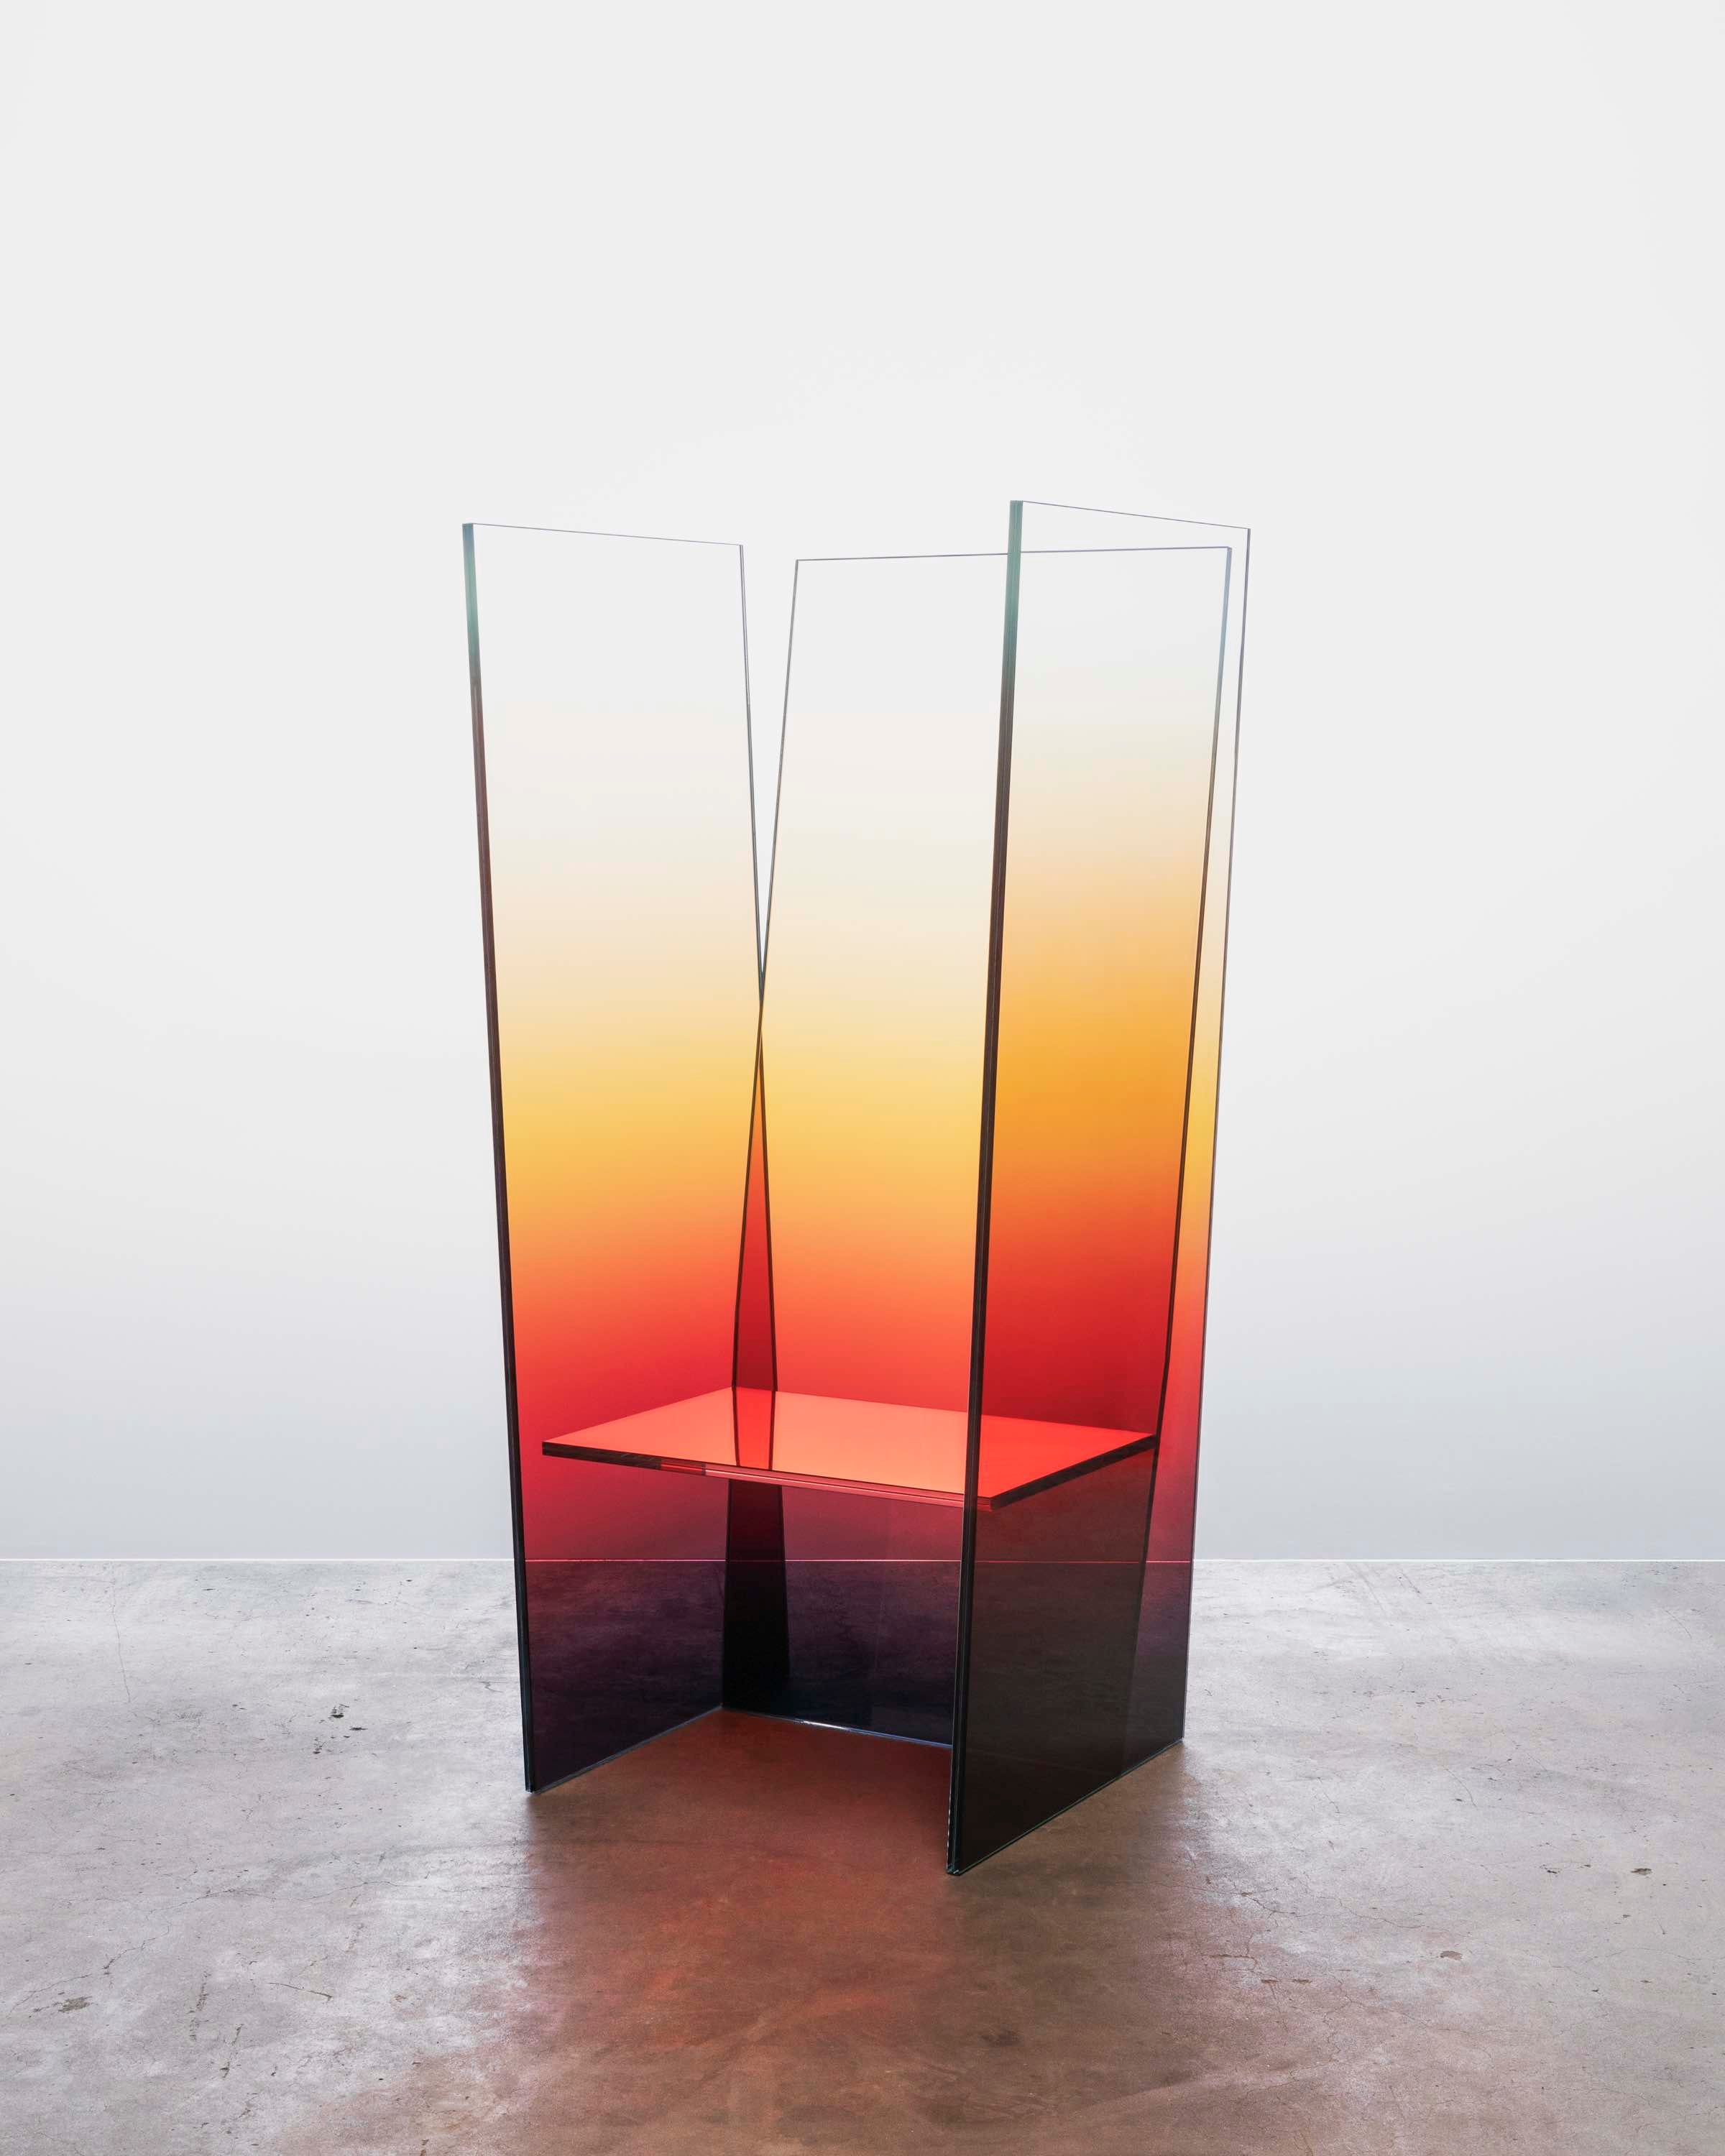 Sunburst Tall Glass Chair, 2021. Germans Ermičs. ©Jussi
Puikkonen. Courtesy of Galerie Maria Wettergren.